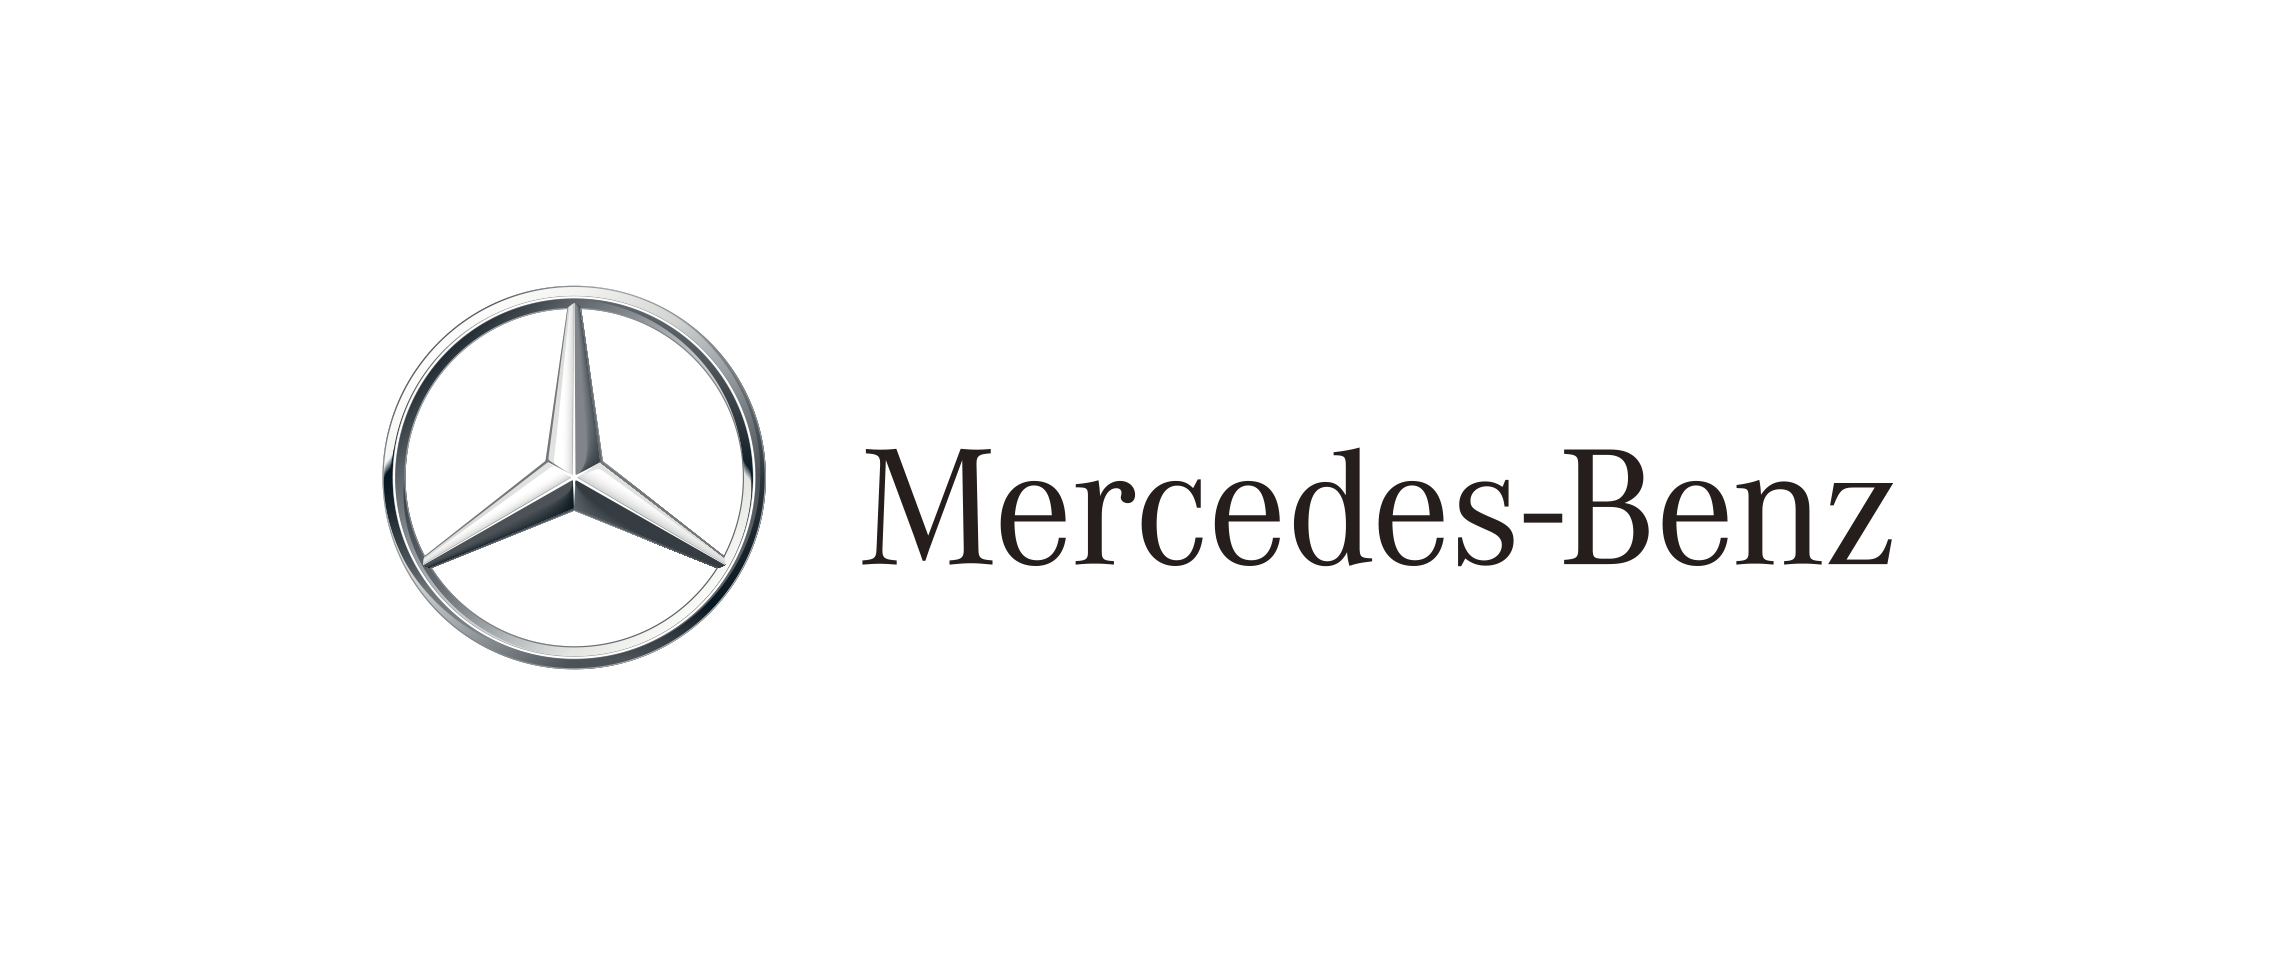 Изменения в организации работы марки Mercedes-Benz в России. Приложение Mercedes Me. Гарантийное и сервисное обслуживание.